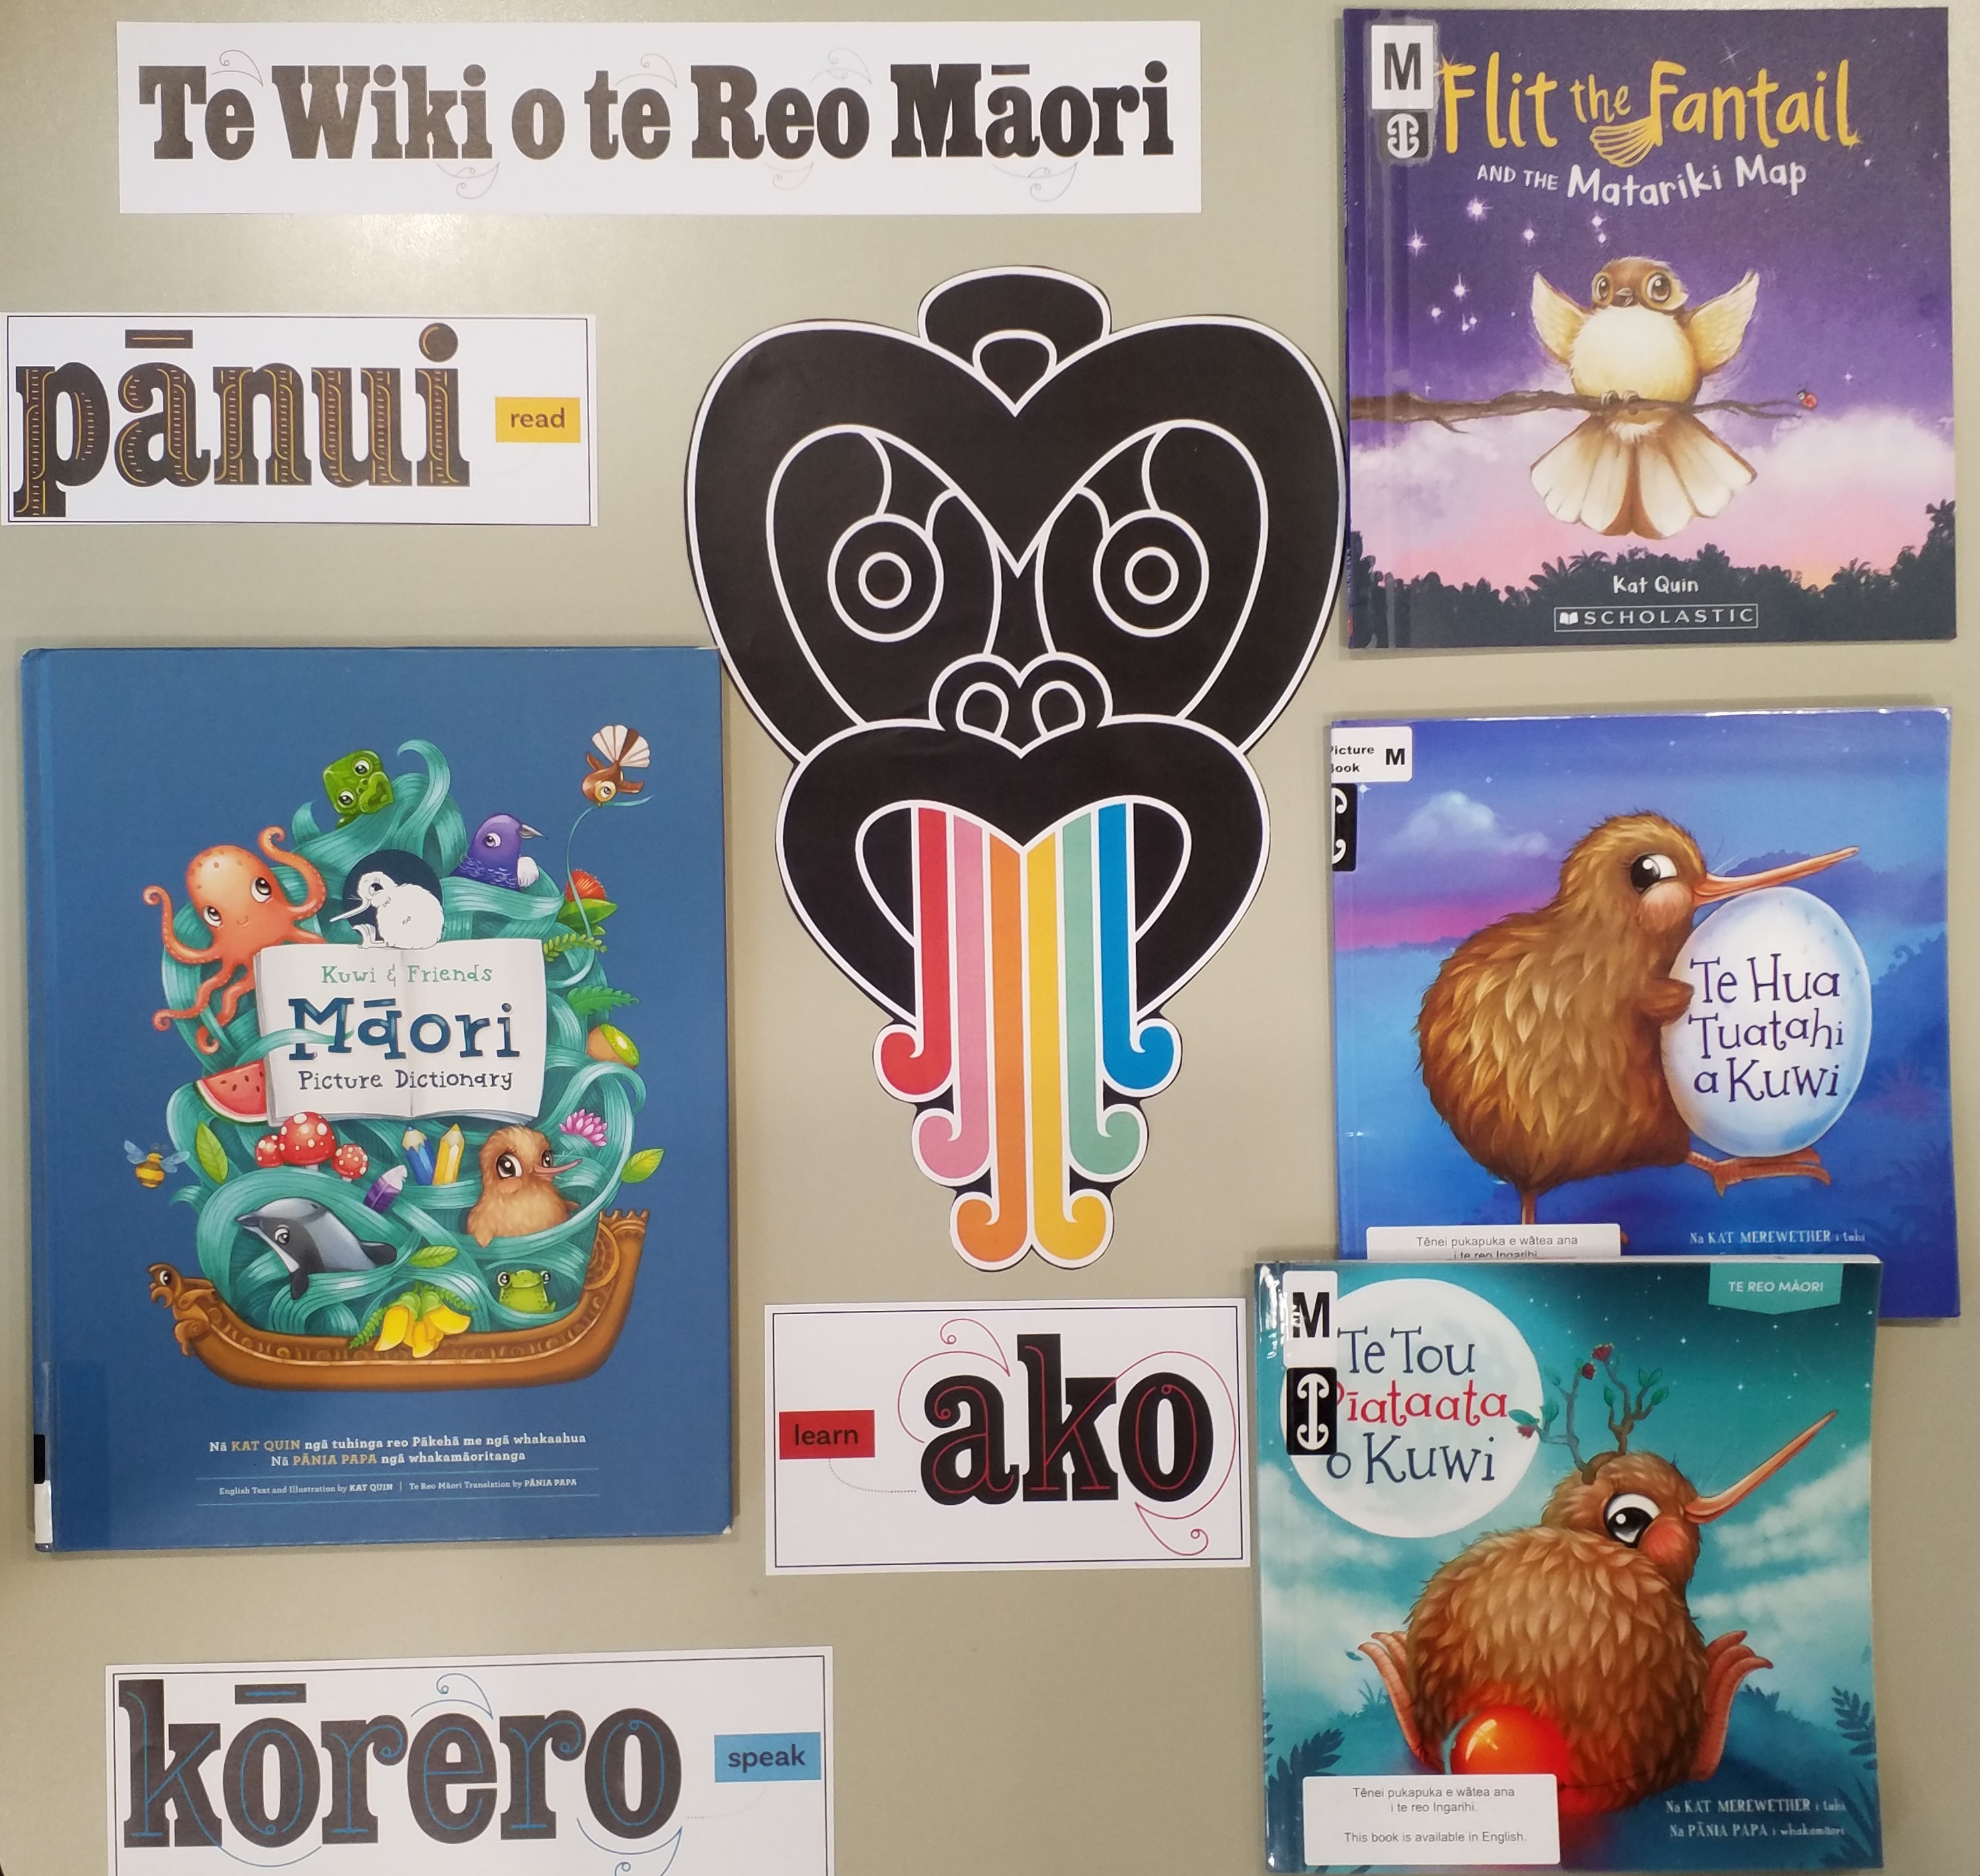 Kuwi the Kiwi’ books